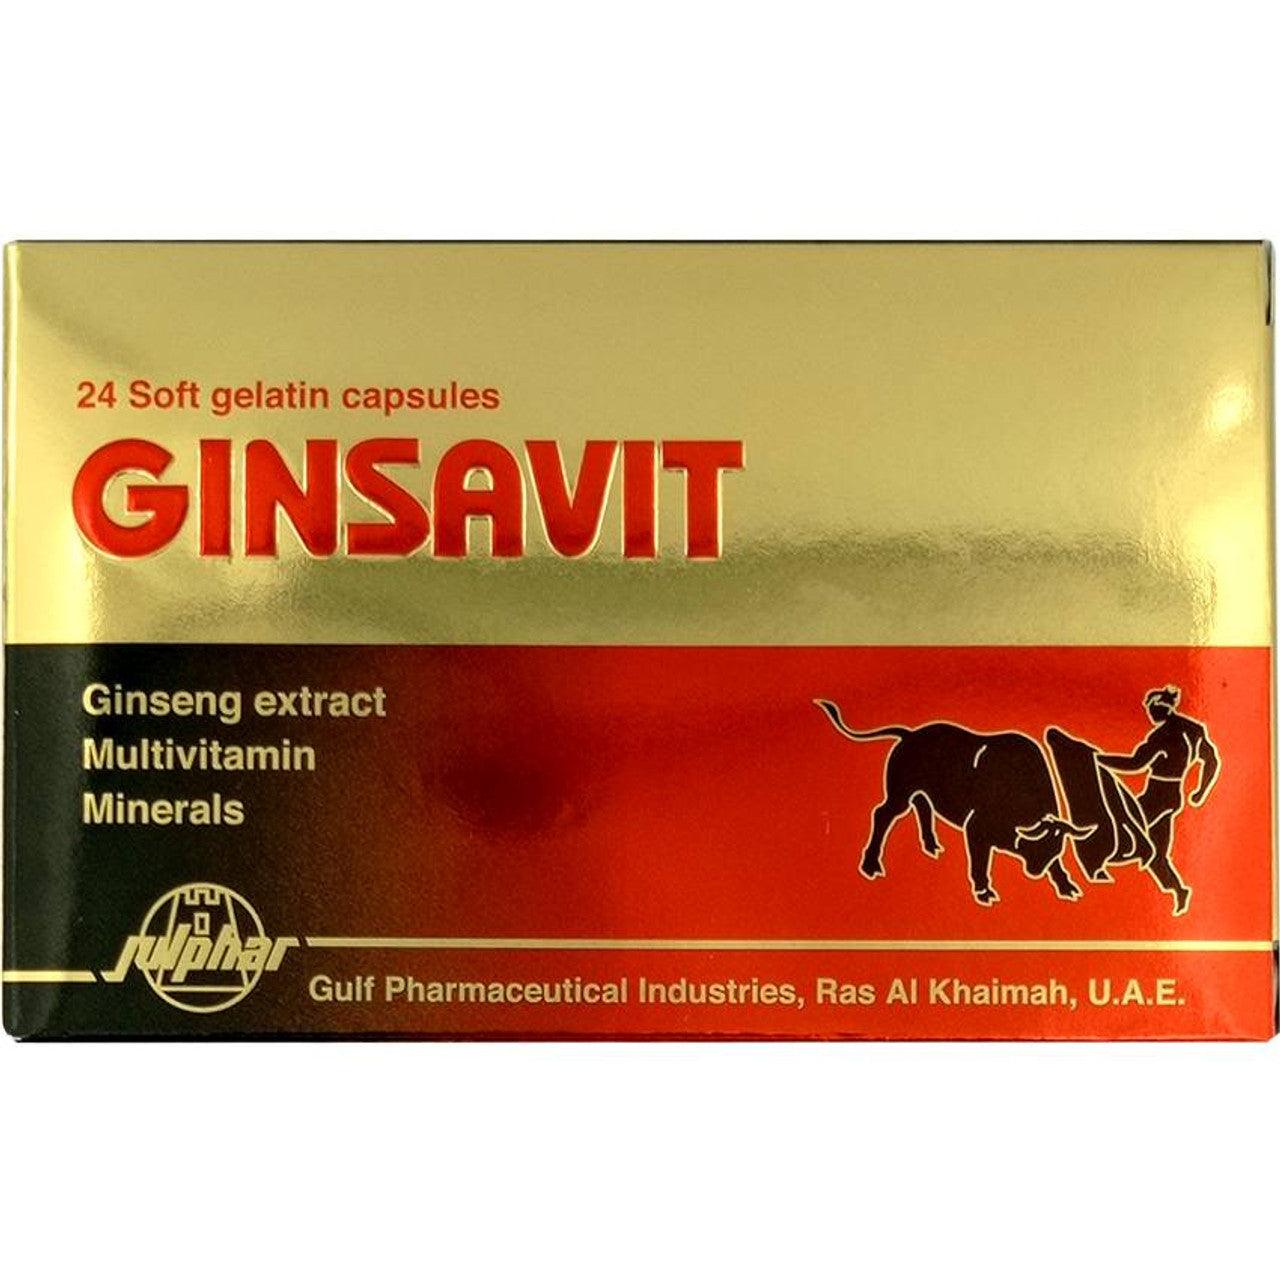 Ginsavit